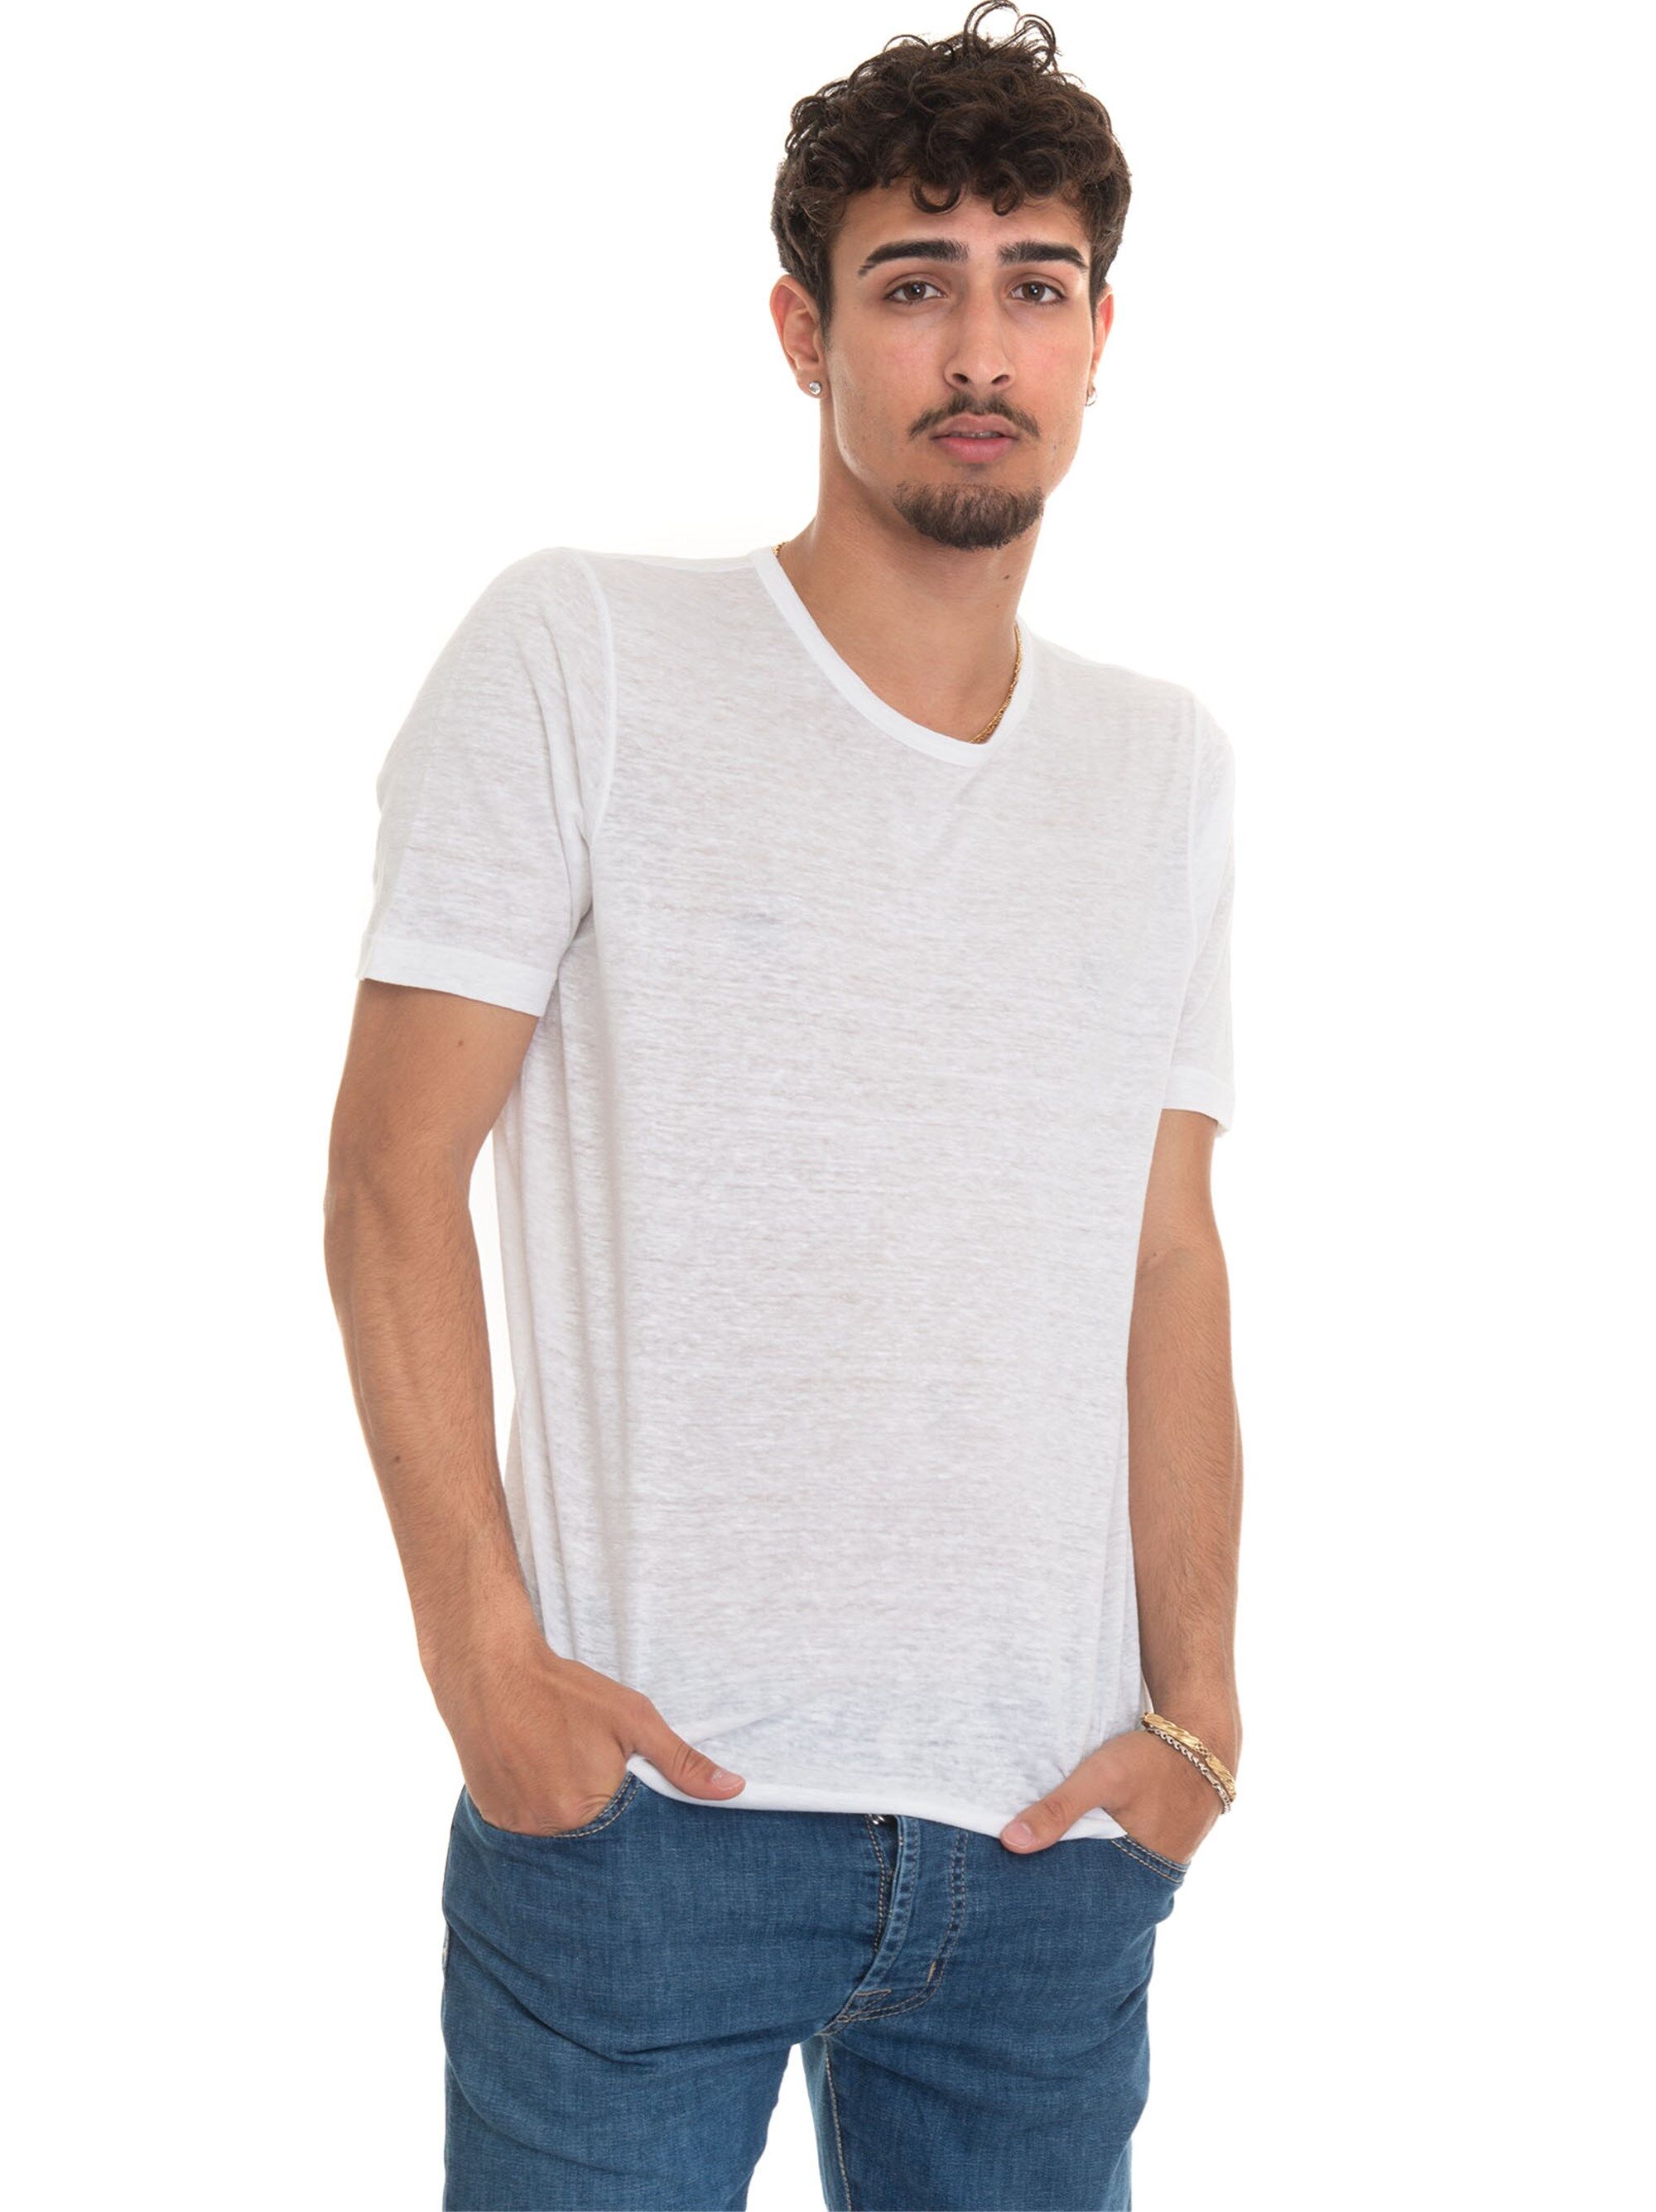 Gran Sasso T-shirt manica corta girocollo Bianco Uomo 50